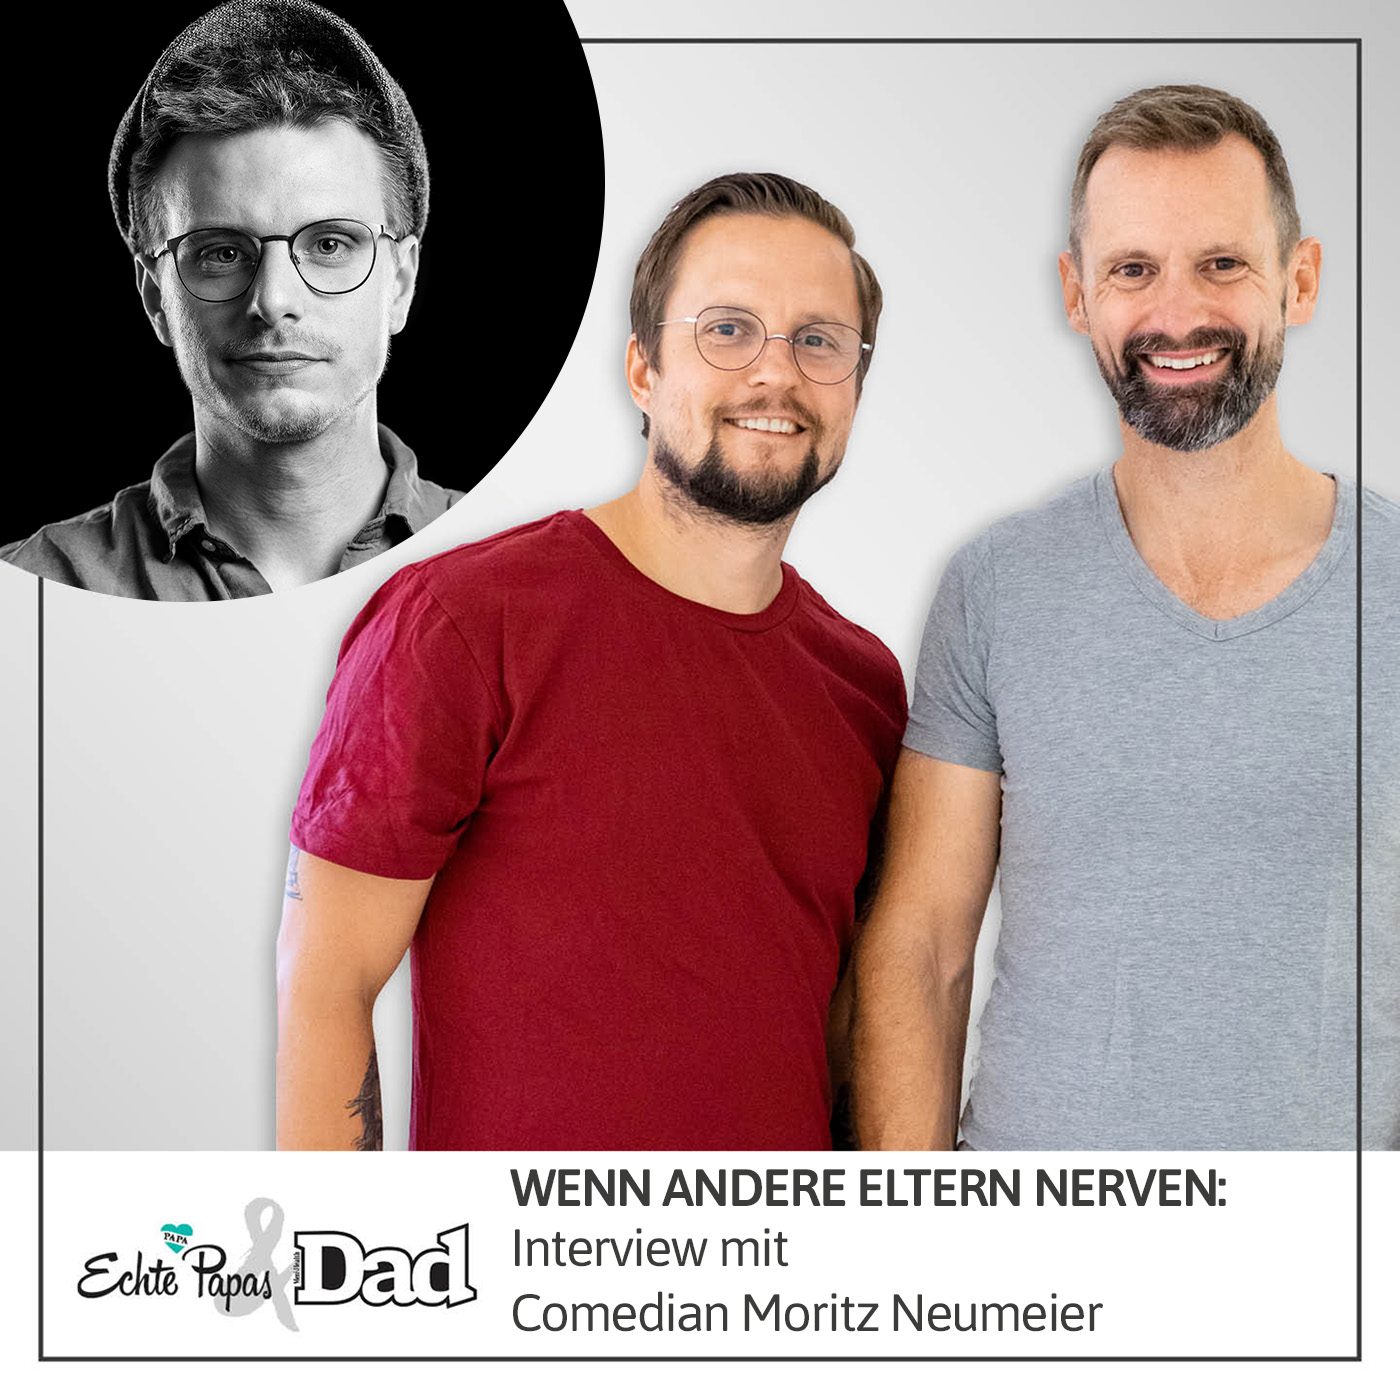 Wenn andere Eltern nerven: Interview mit Comedian Moritz Neumeier